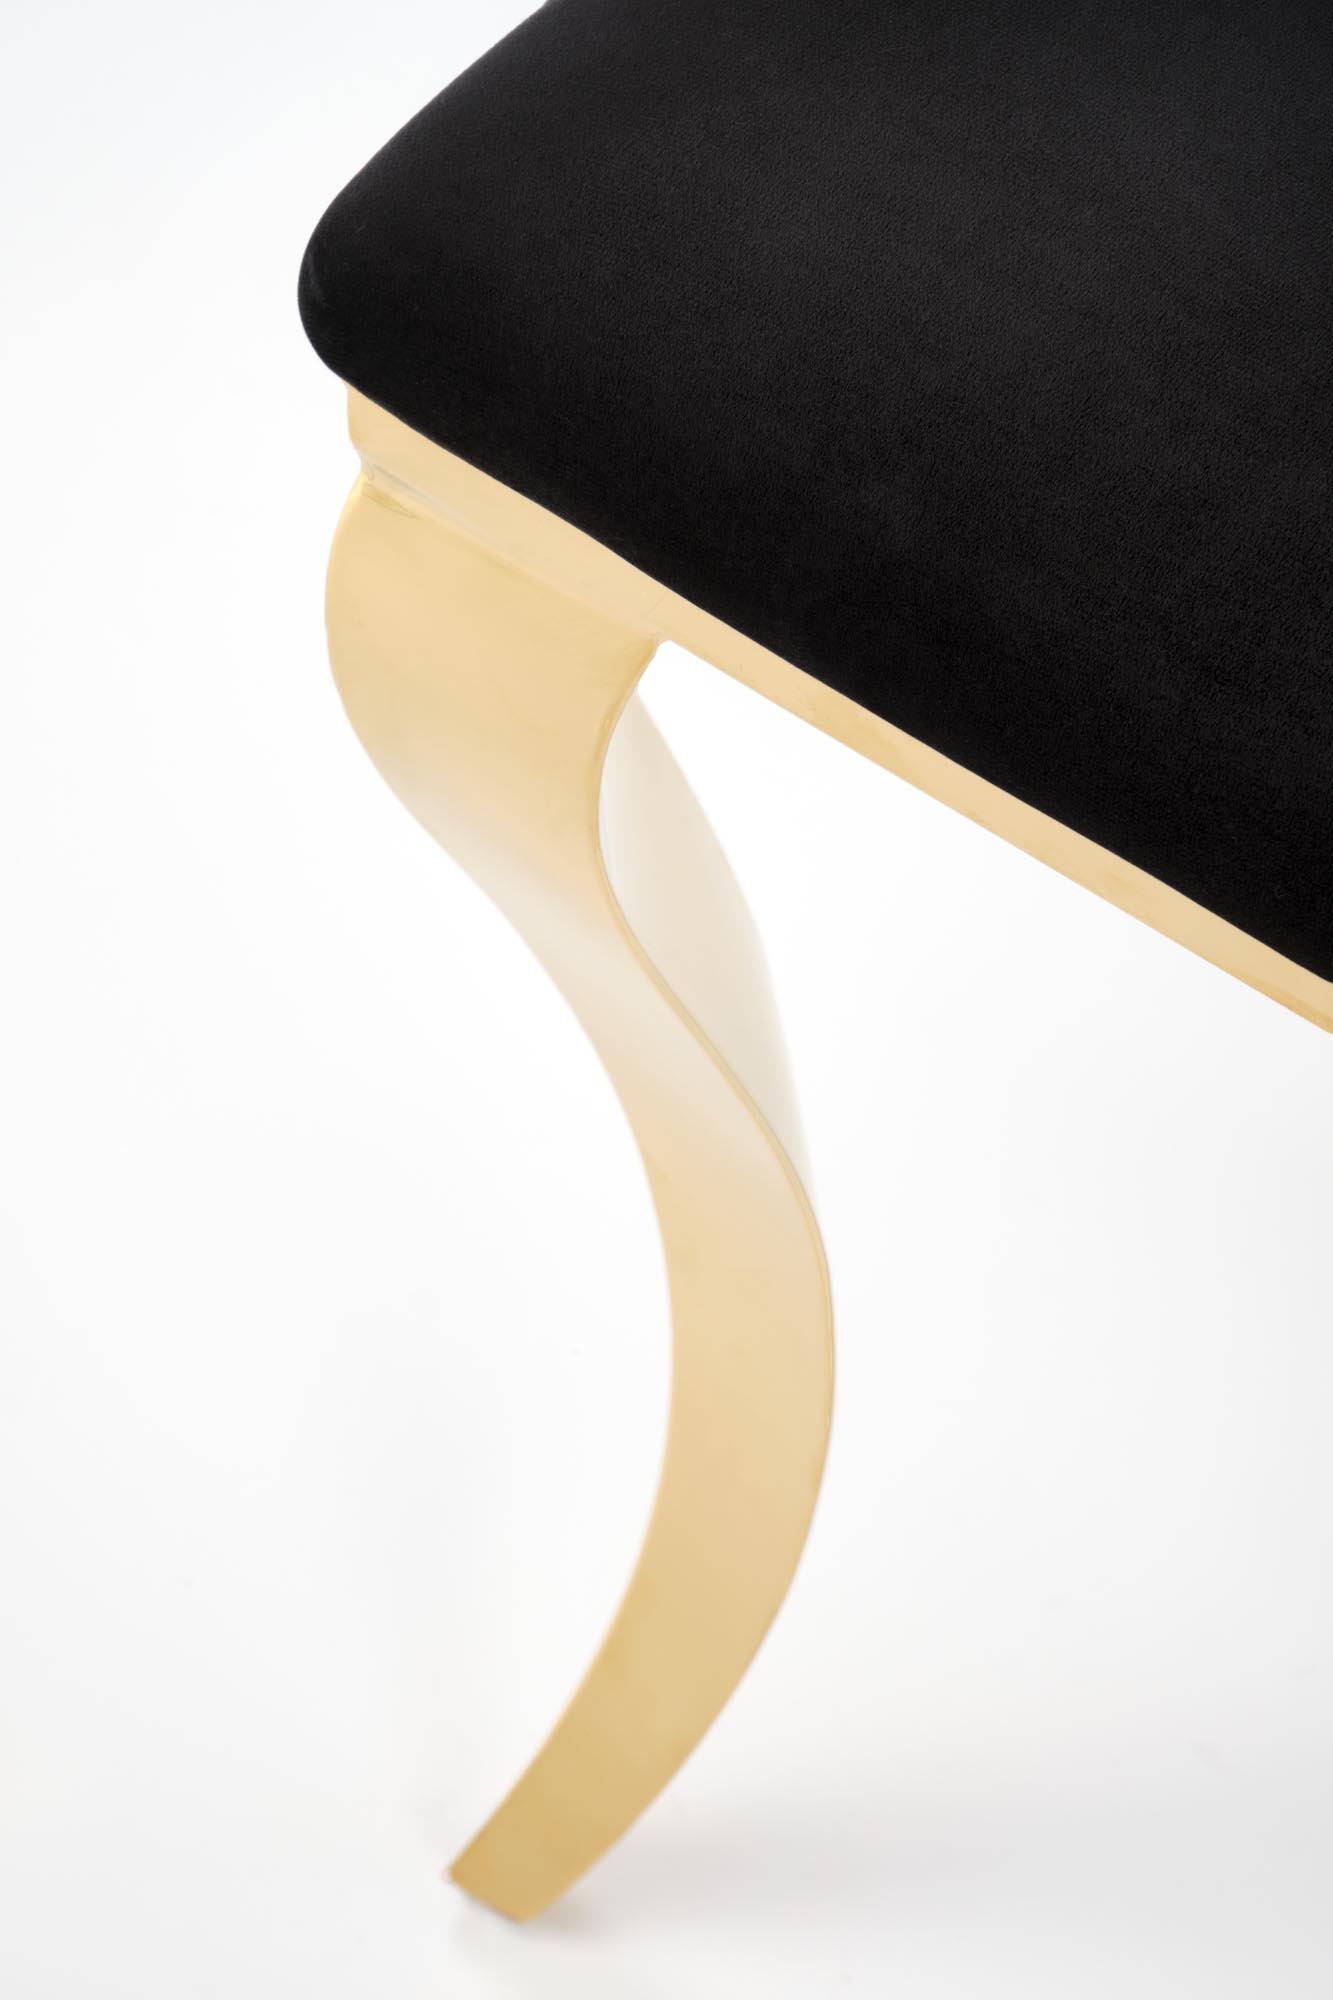 Krzesło tapicerowane K556 - welvet czarny Bluvel 19 / złote nogi Krzesło tapicerowane K556 - welvet czarny Bluvel 19 / złote nogi